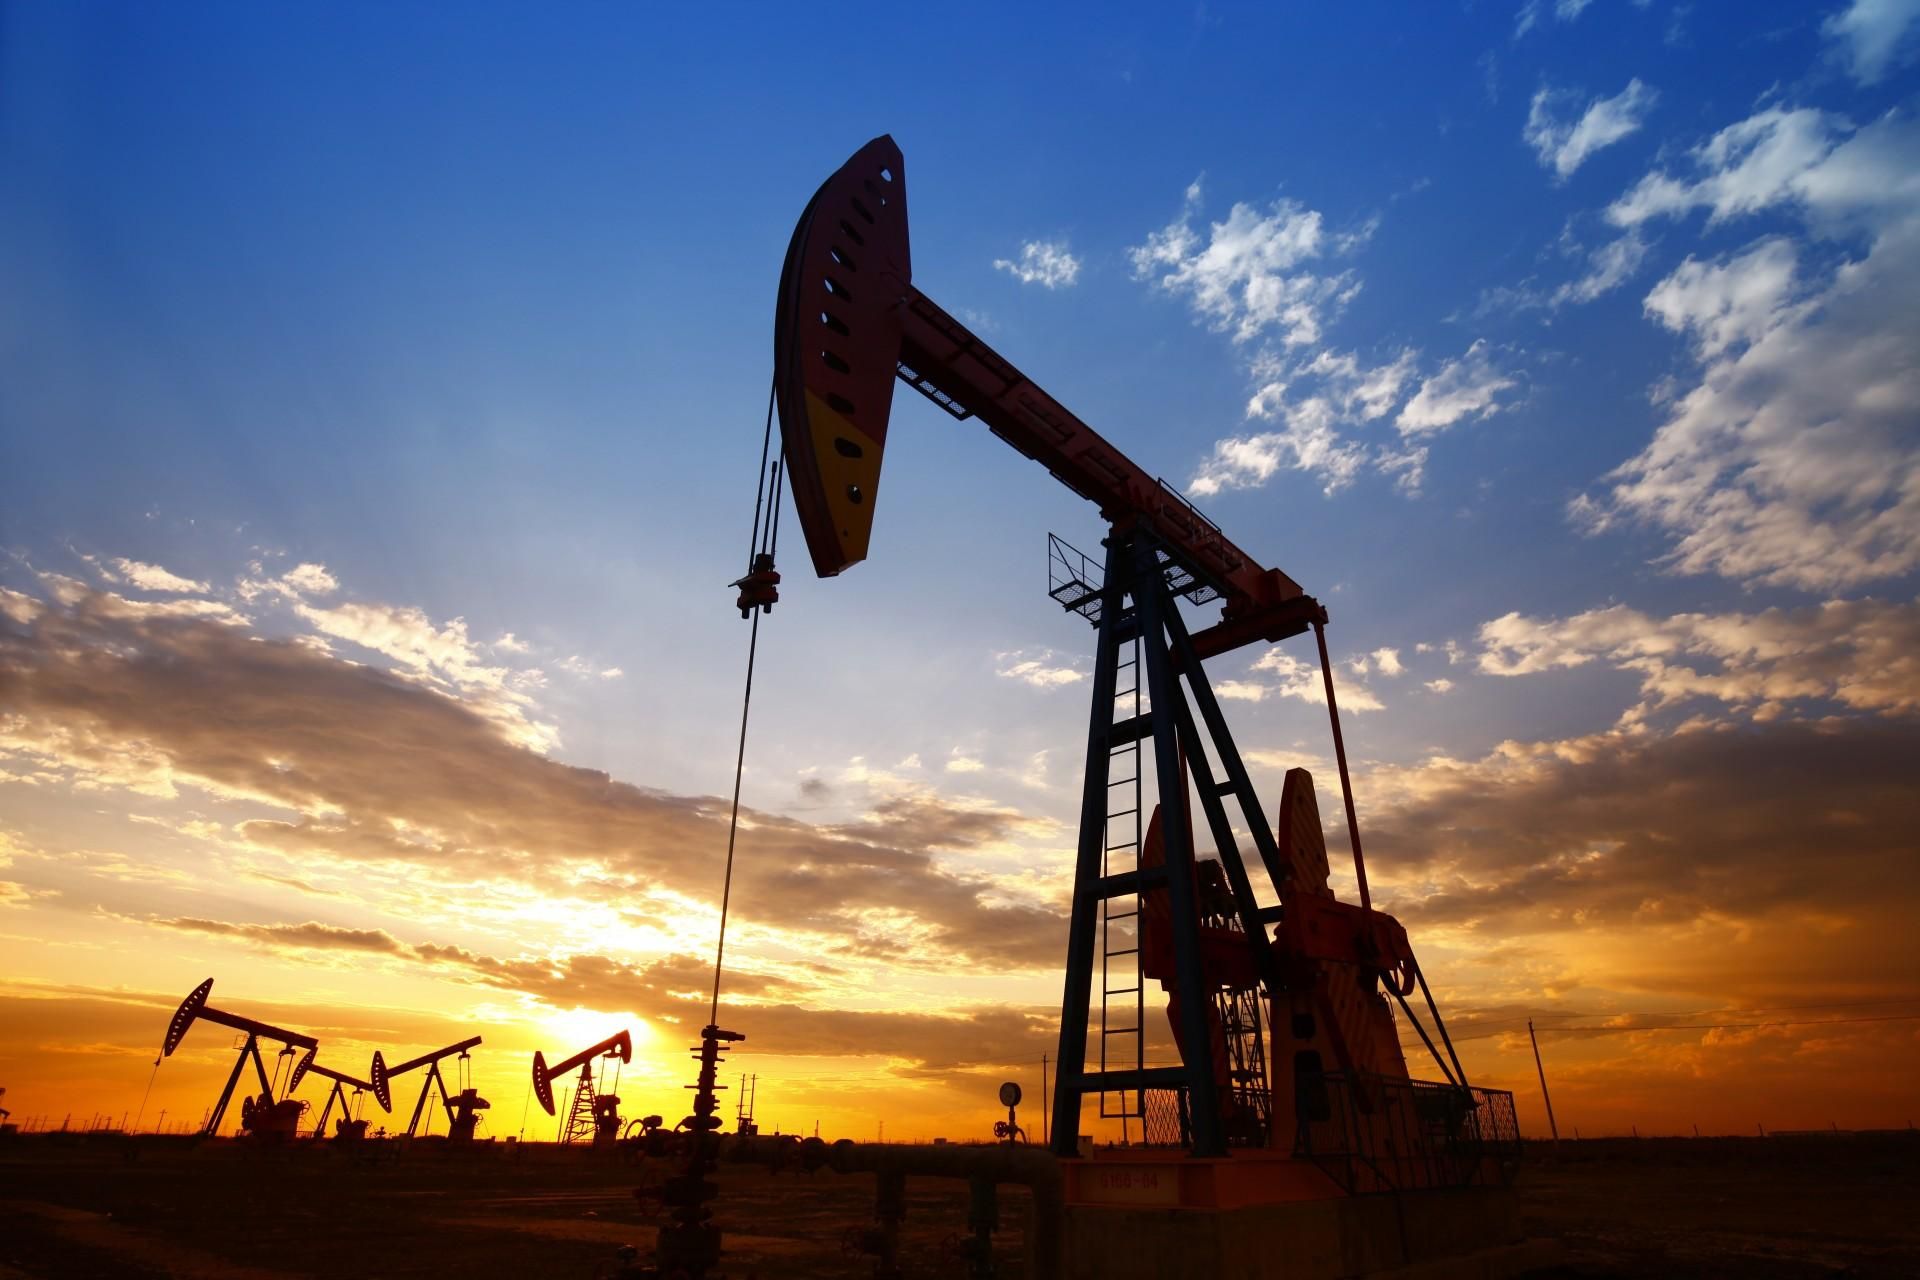 ОПЕК+ вирішили й надалі збільшувати виробництво нафти: як це вплинуло на ціну - нафта новини - Економіка